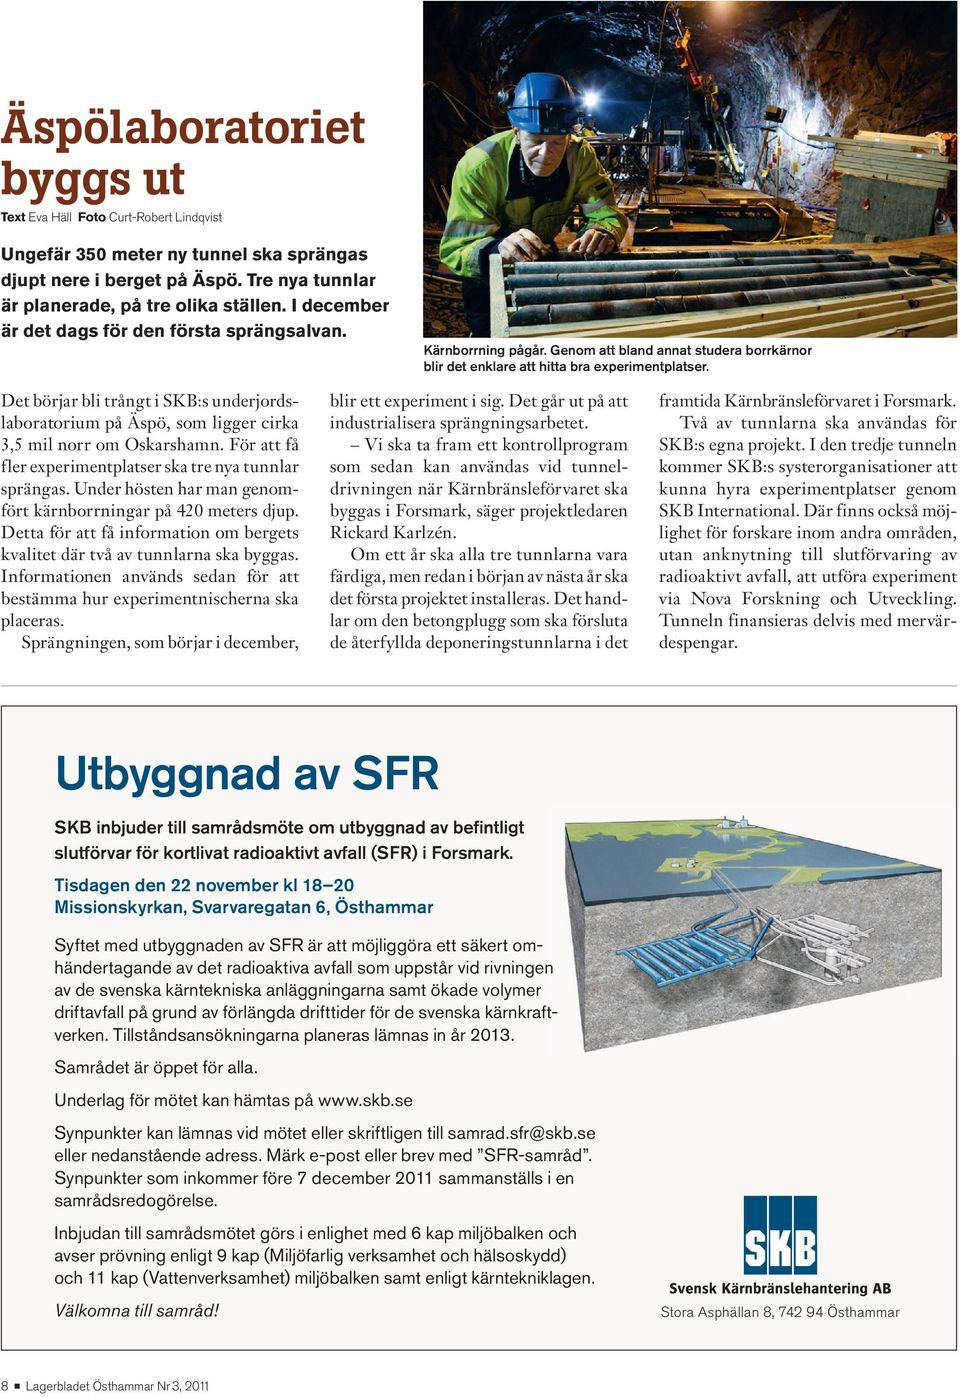 Det börjar bli trångt i SKB:s underjordslaboratorium på Äspö, som ligger cirka 3,5 mil norr om Oskarshamn. För att få fler experimentplatser ska tre nya tunnlar sprängas.